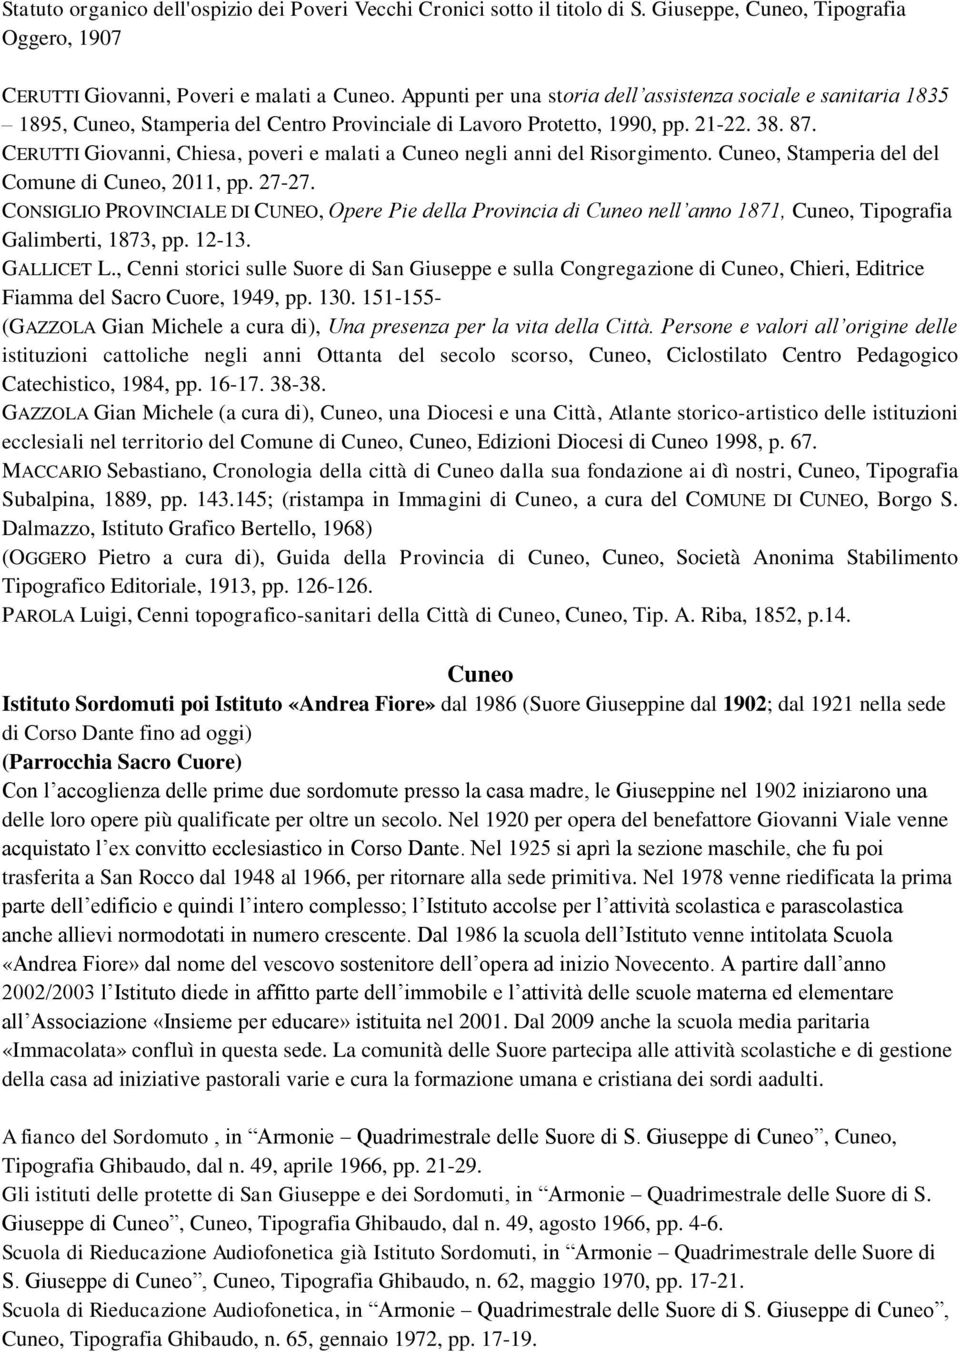 CERUTTI Giovanni, Chiesa, poveri e malati a negli anni del Risorgimento., Stamperia del del Comune di, 2011, pp. 27-27.